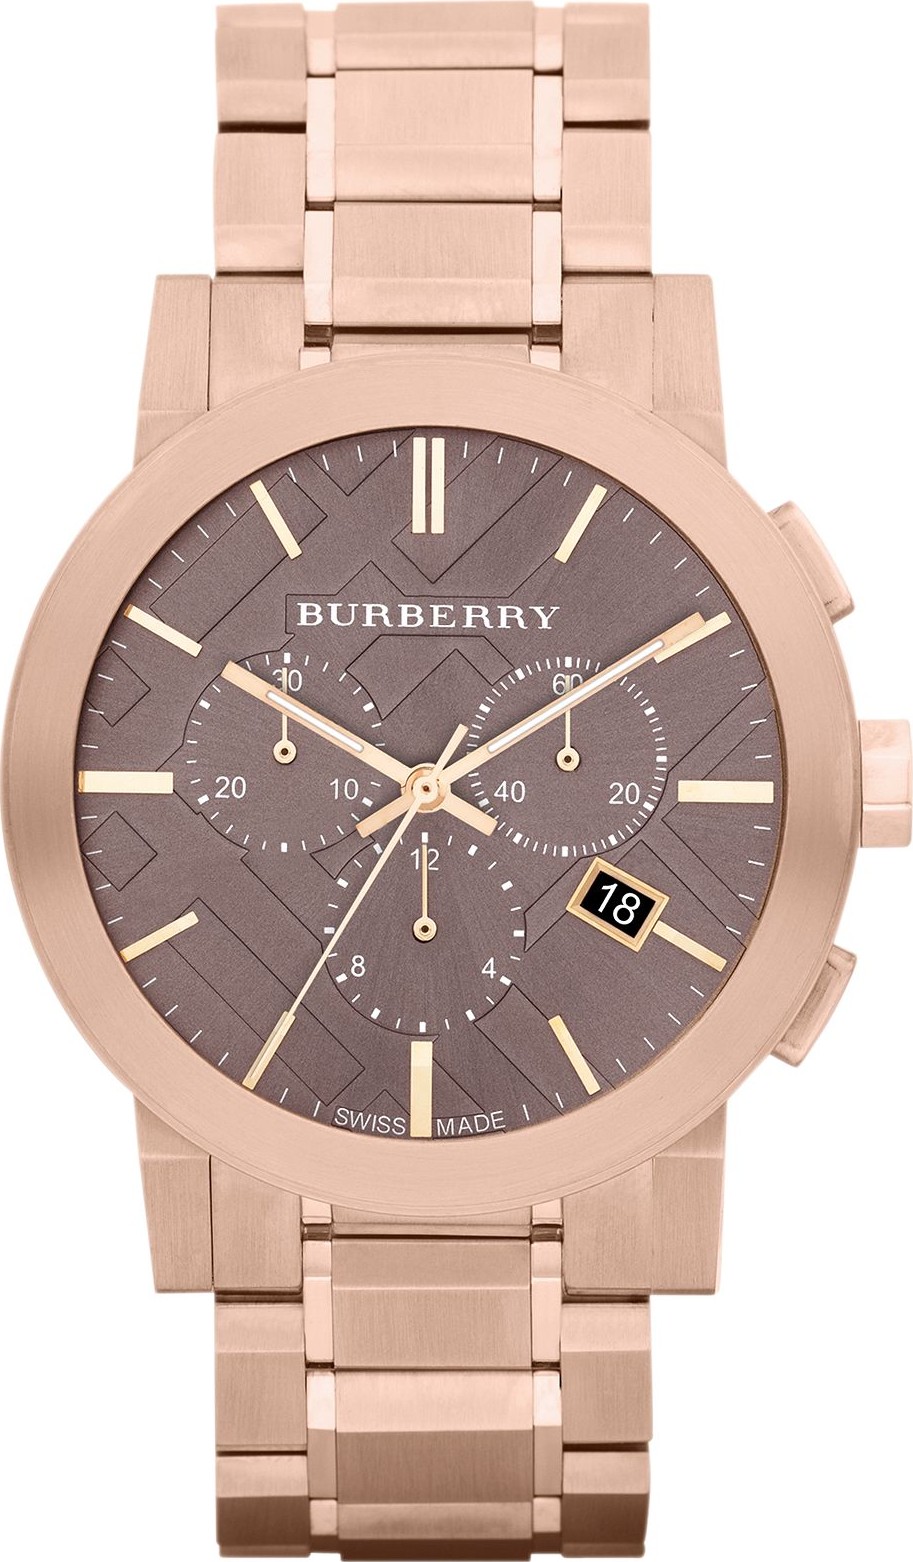 đồng hồ burberry nam giảm giá